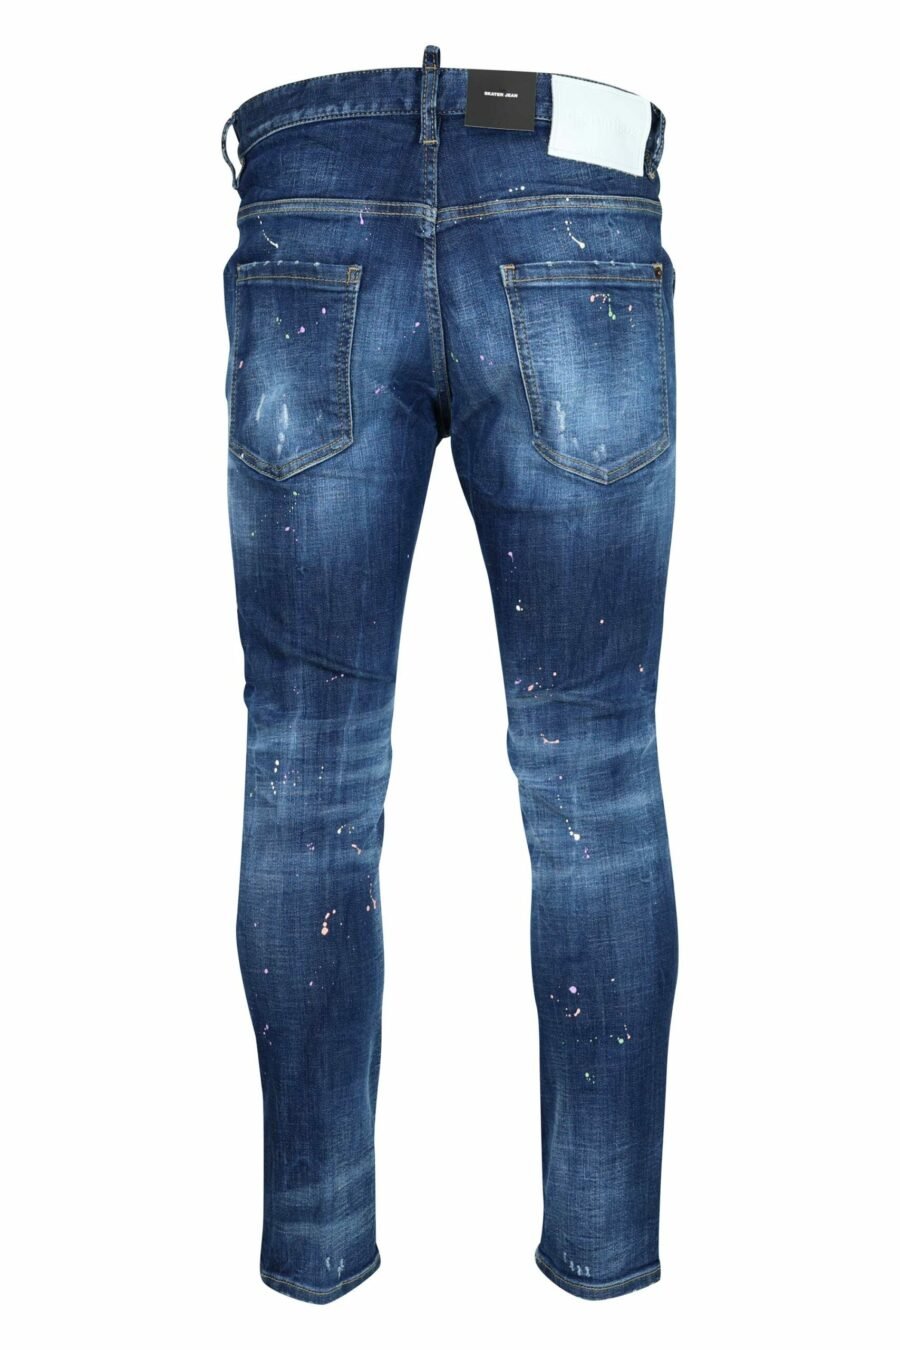 Jeans "skater jean" bleu foncé avec peinture blanche - 8054148527457 2 à l'échelle